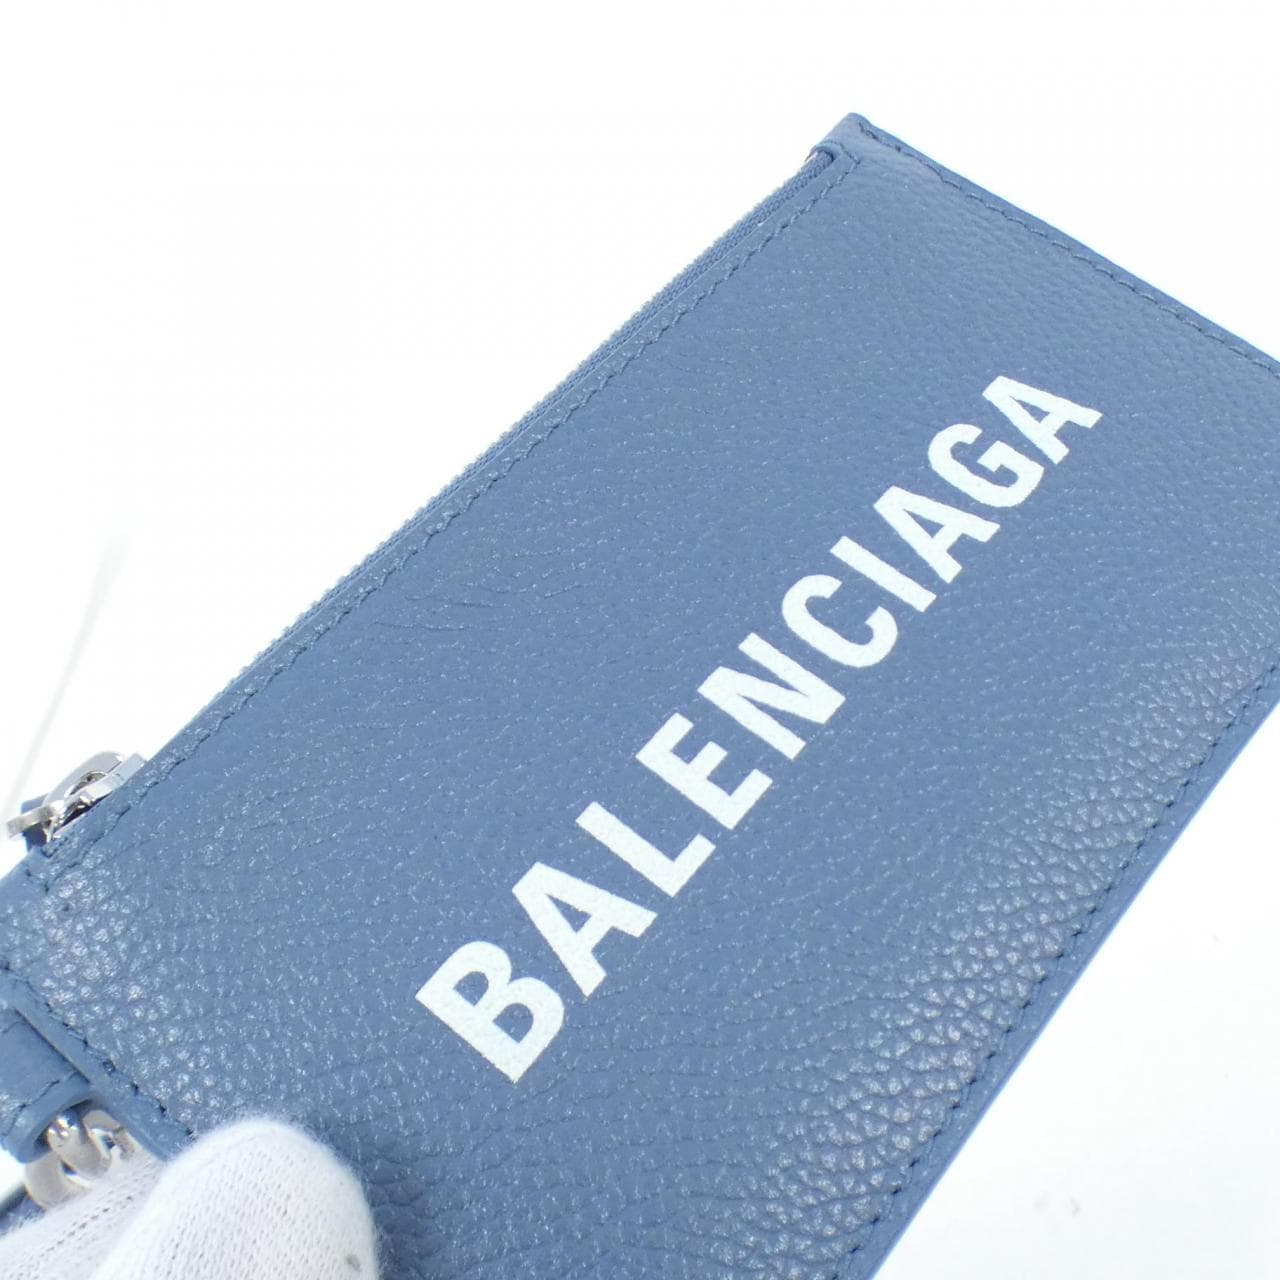 [BRAND NEW] BALENCIAGA Cash Card Case On Qeelin 594548 1IZI3 INCASE